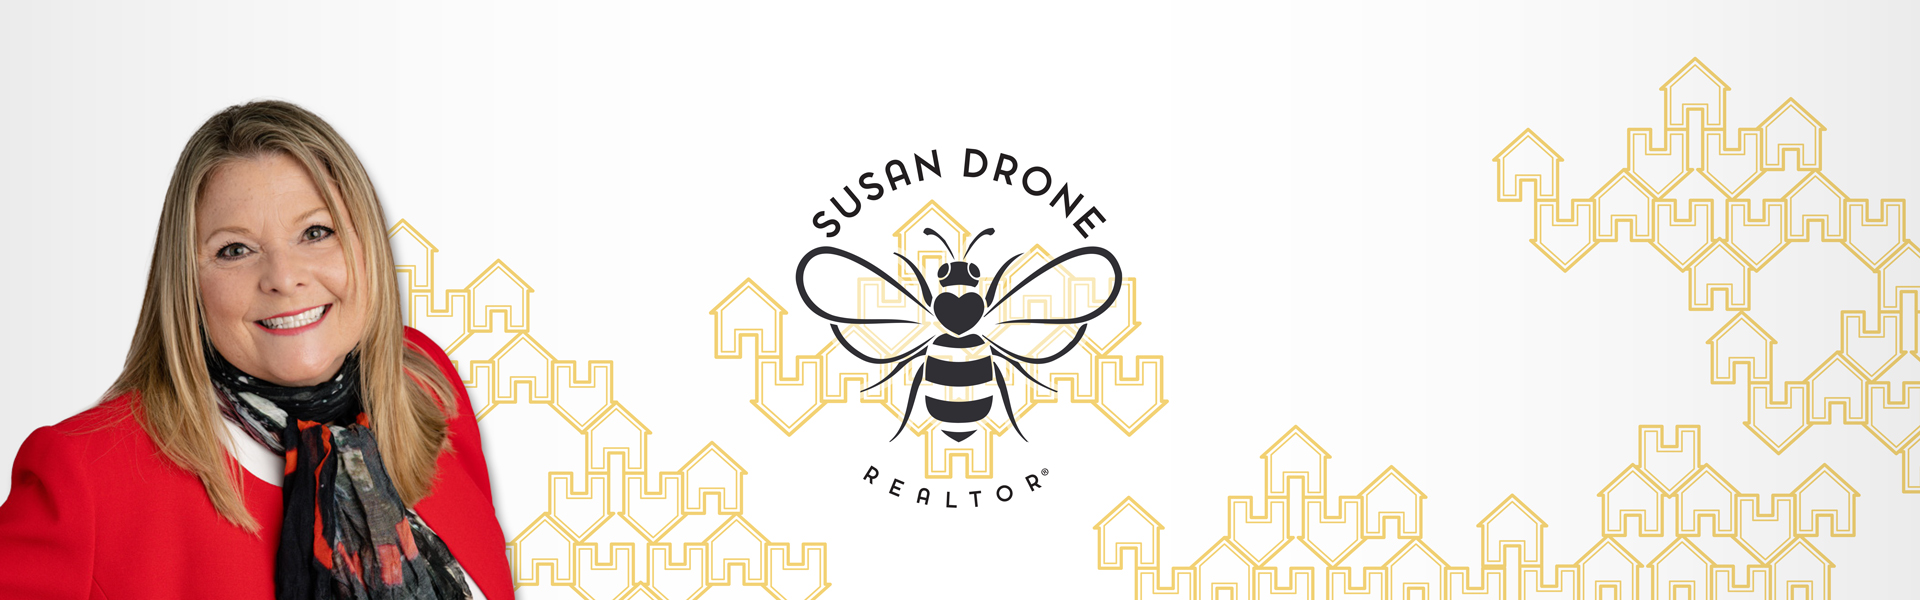 Susan Drone